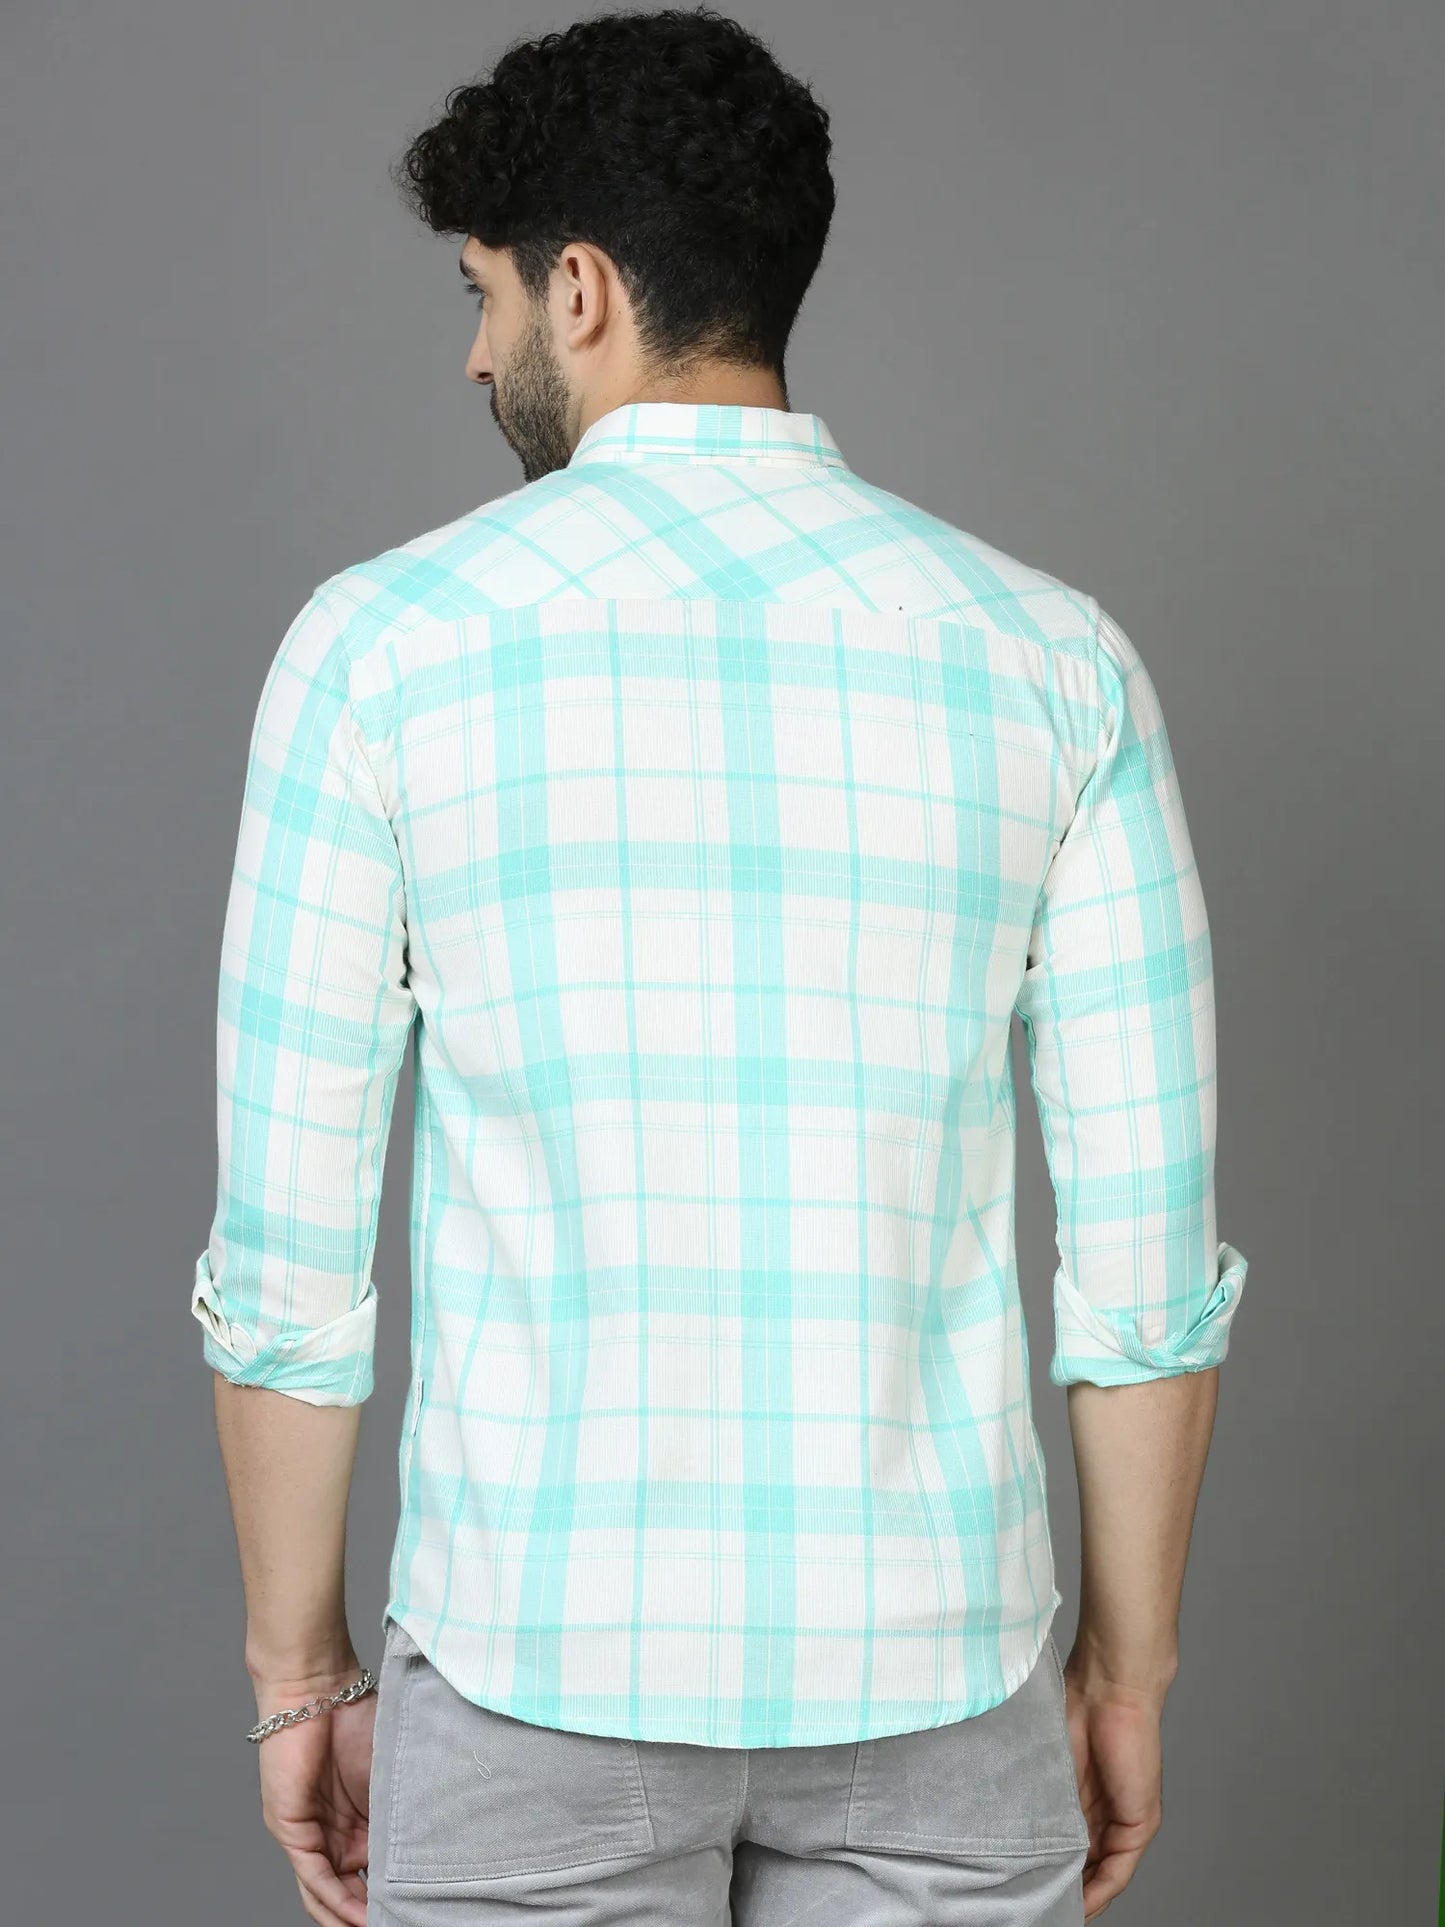 Vibrant Green Lush Checkered Shirt for Men 